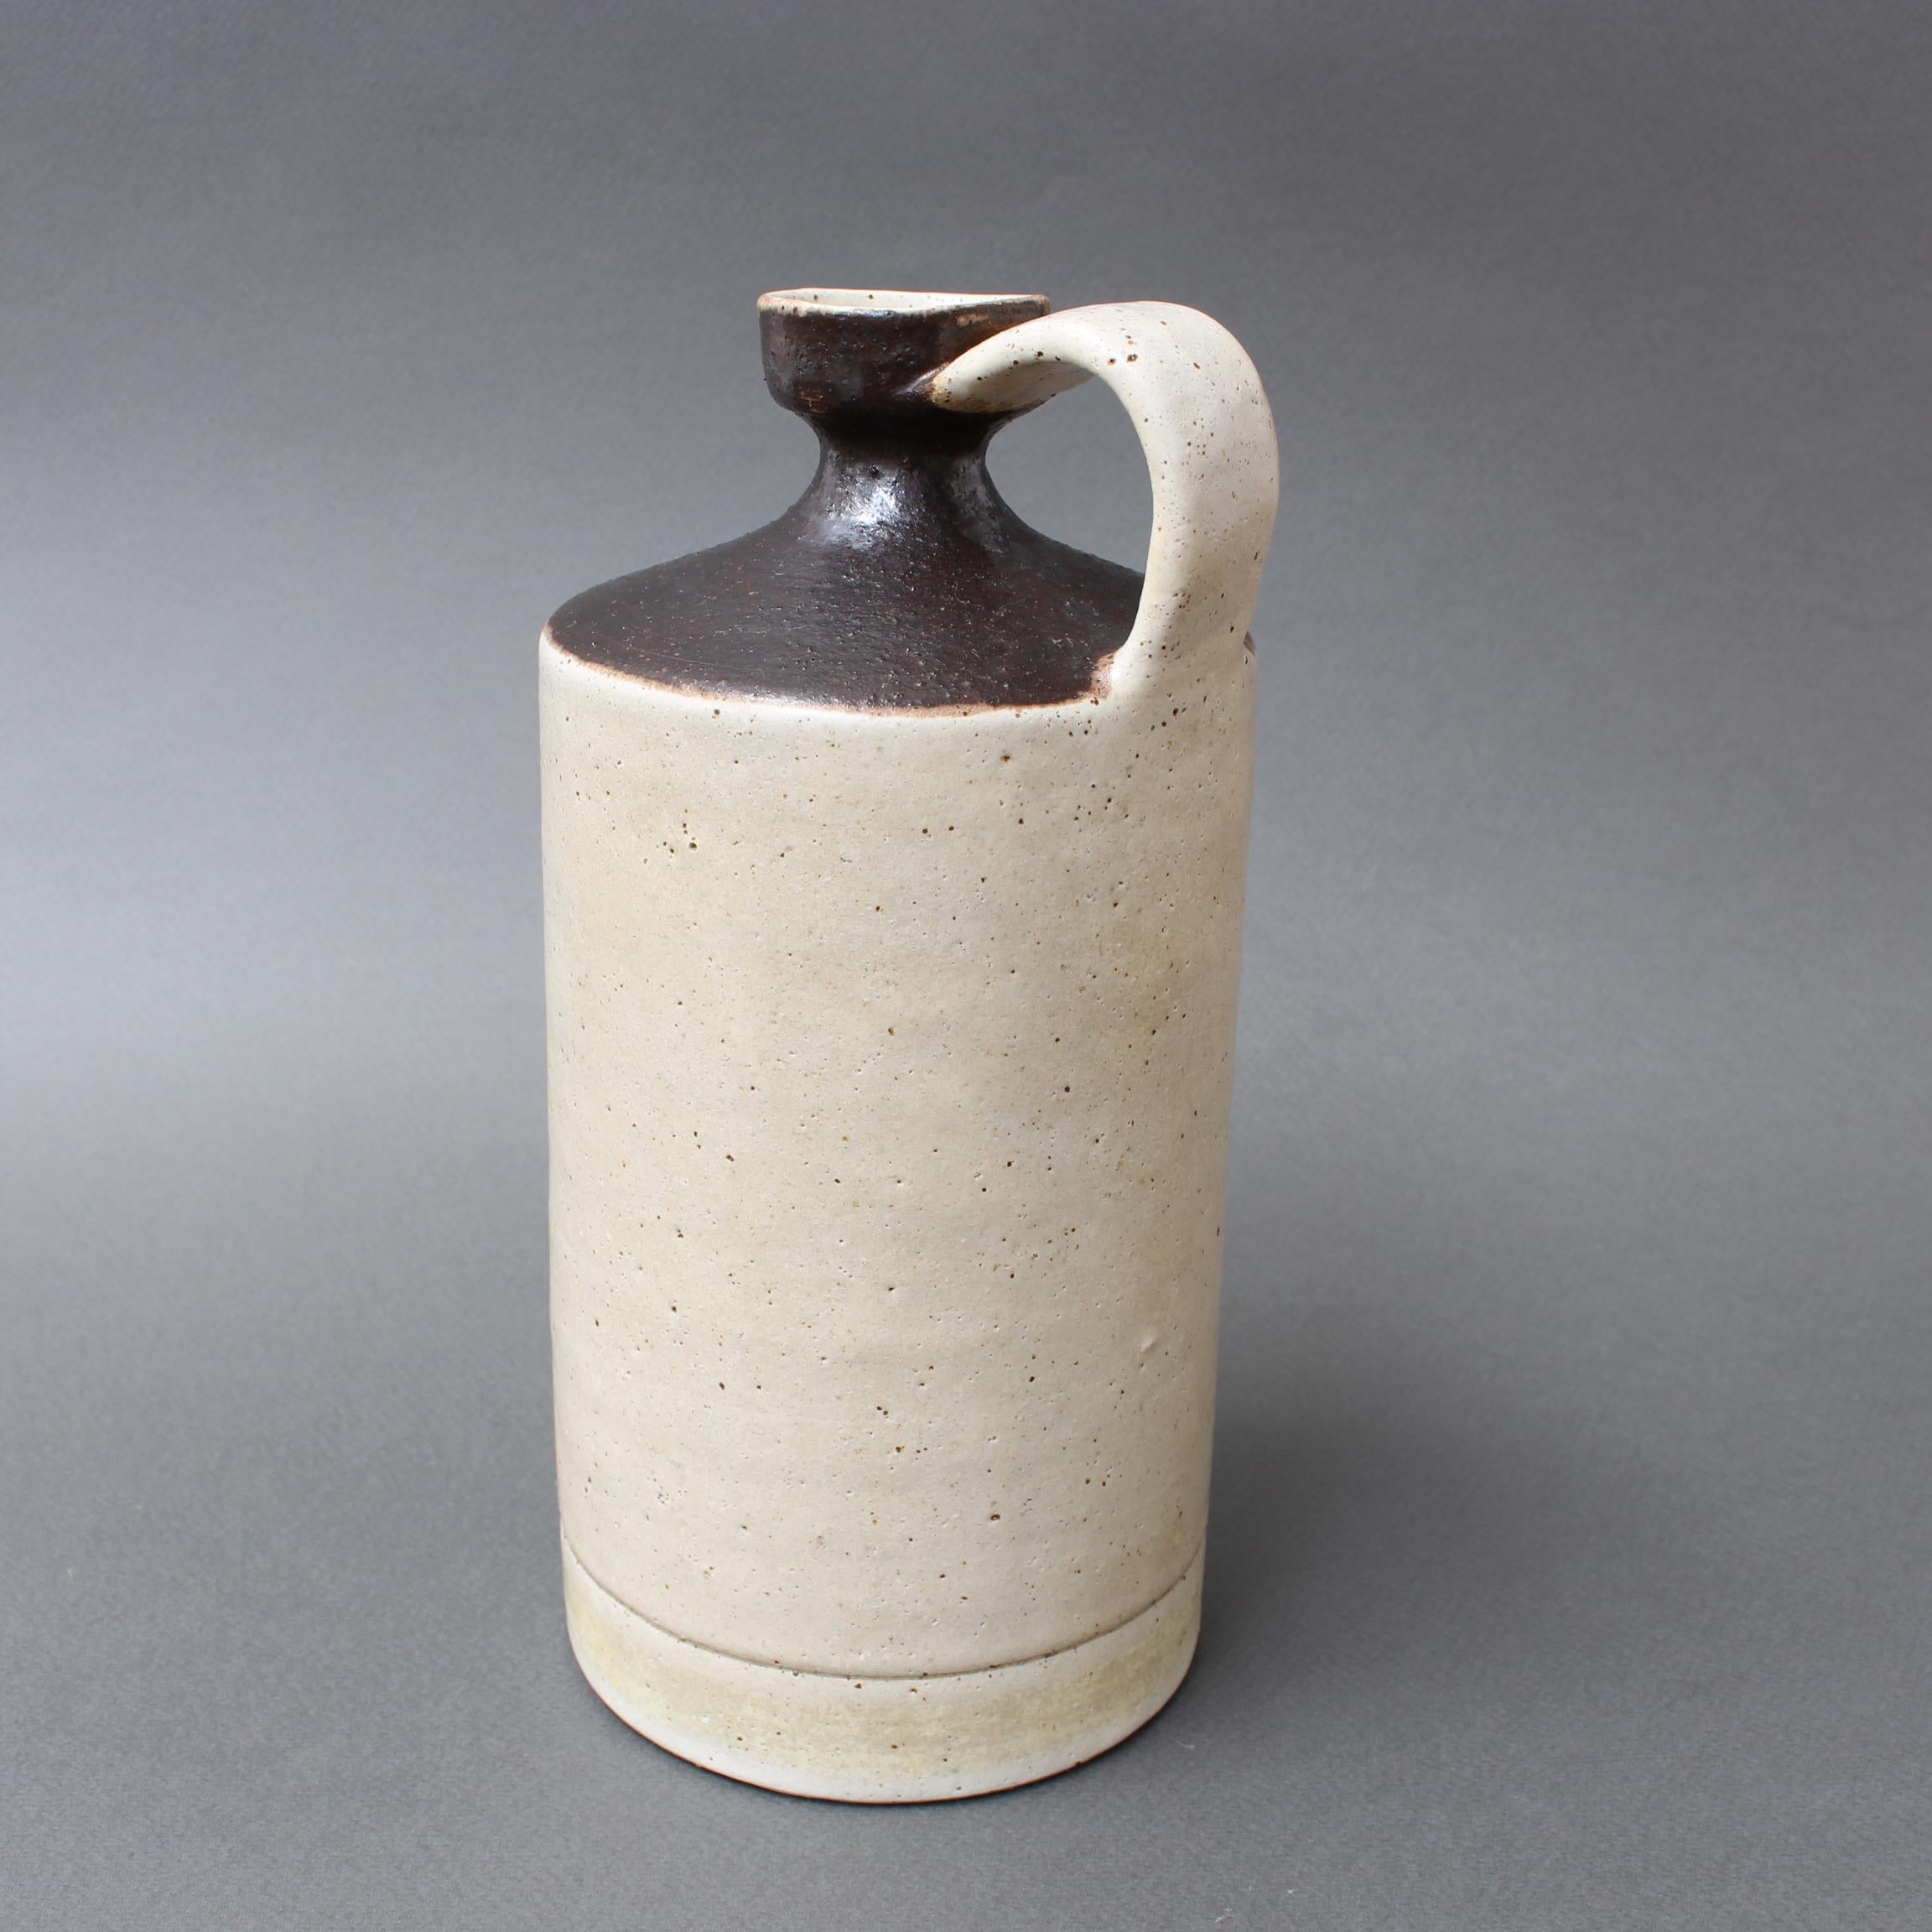 Pichet / vase décoratif en céramique italienne de Bruno Gambone (vers les années 1970). Tout comme nos autres récipients Bruno Gambone, celui-ci présente une pureté de forme, une teinte sourde et une beauté évidente et sans effort qui n'est créée